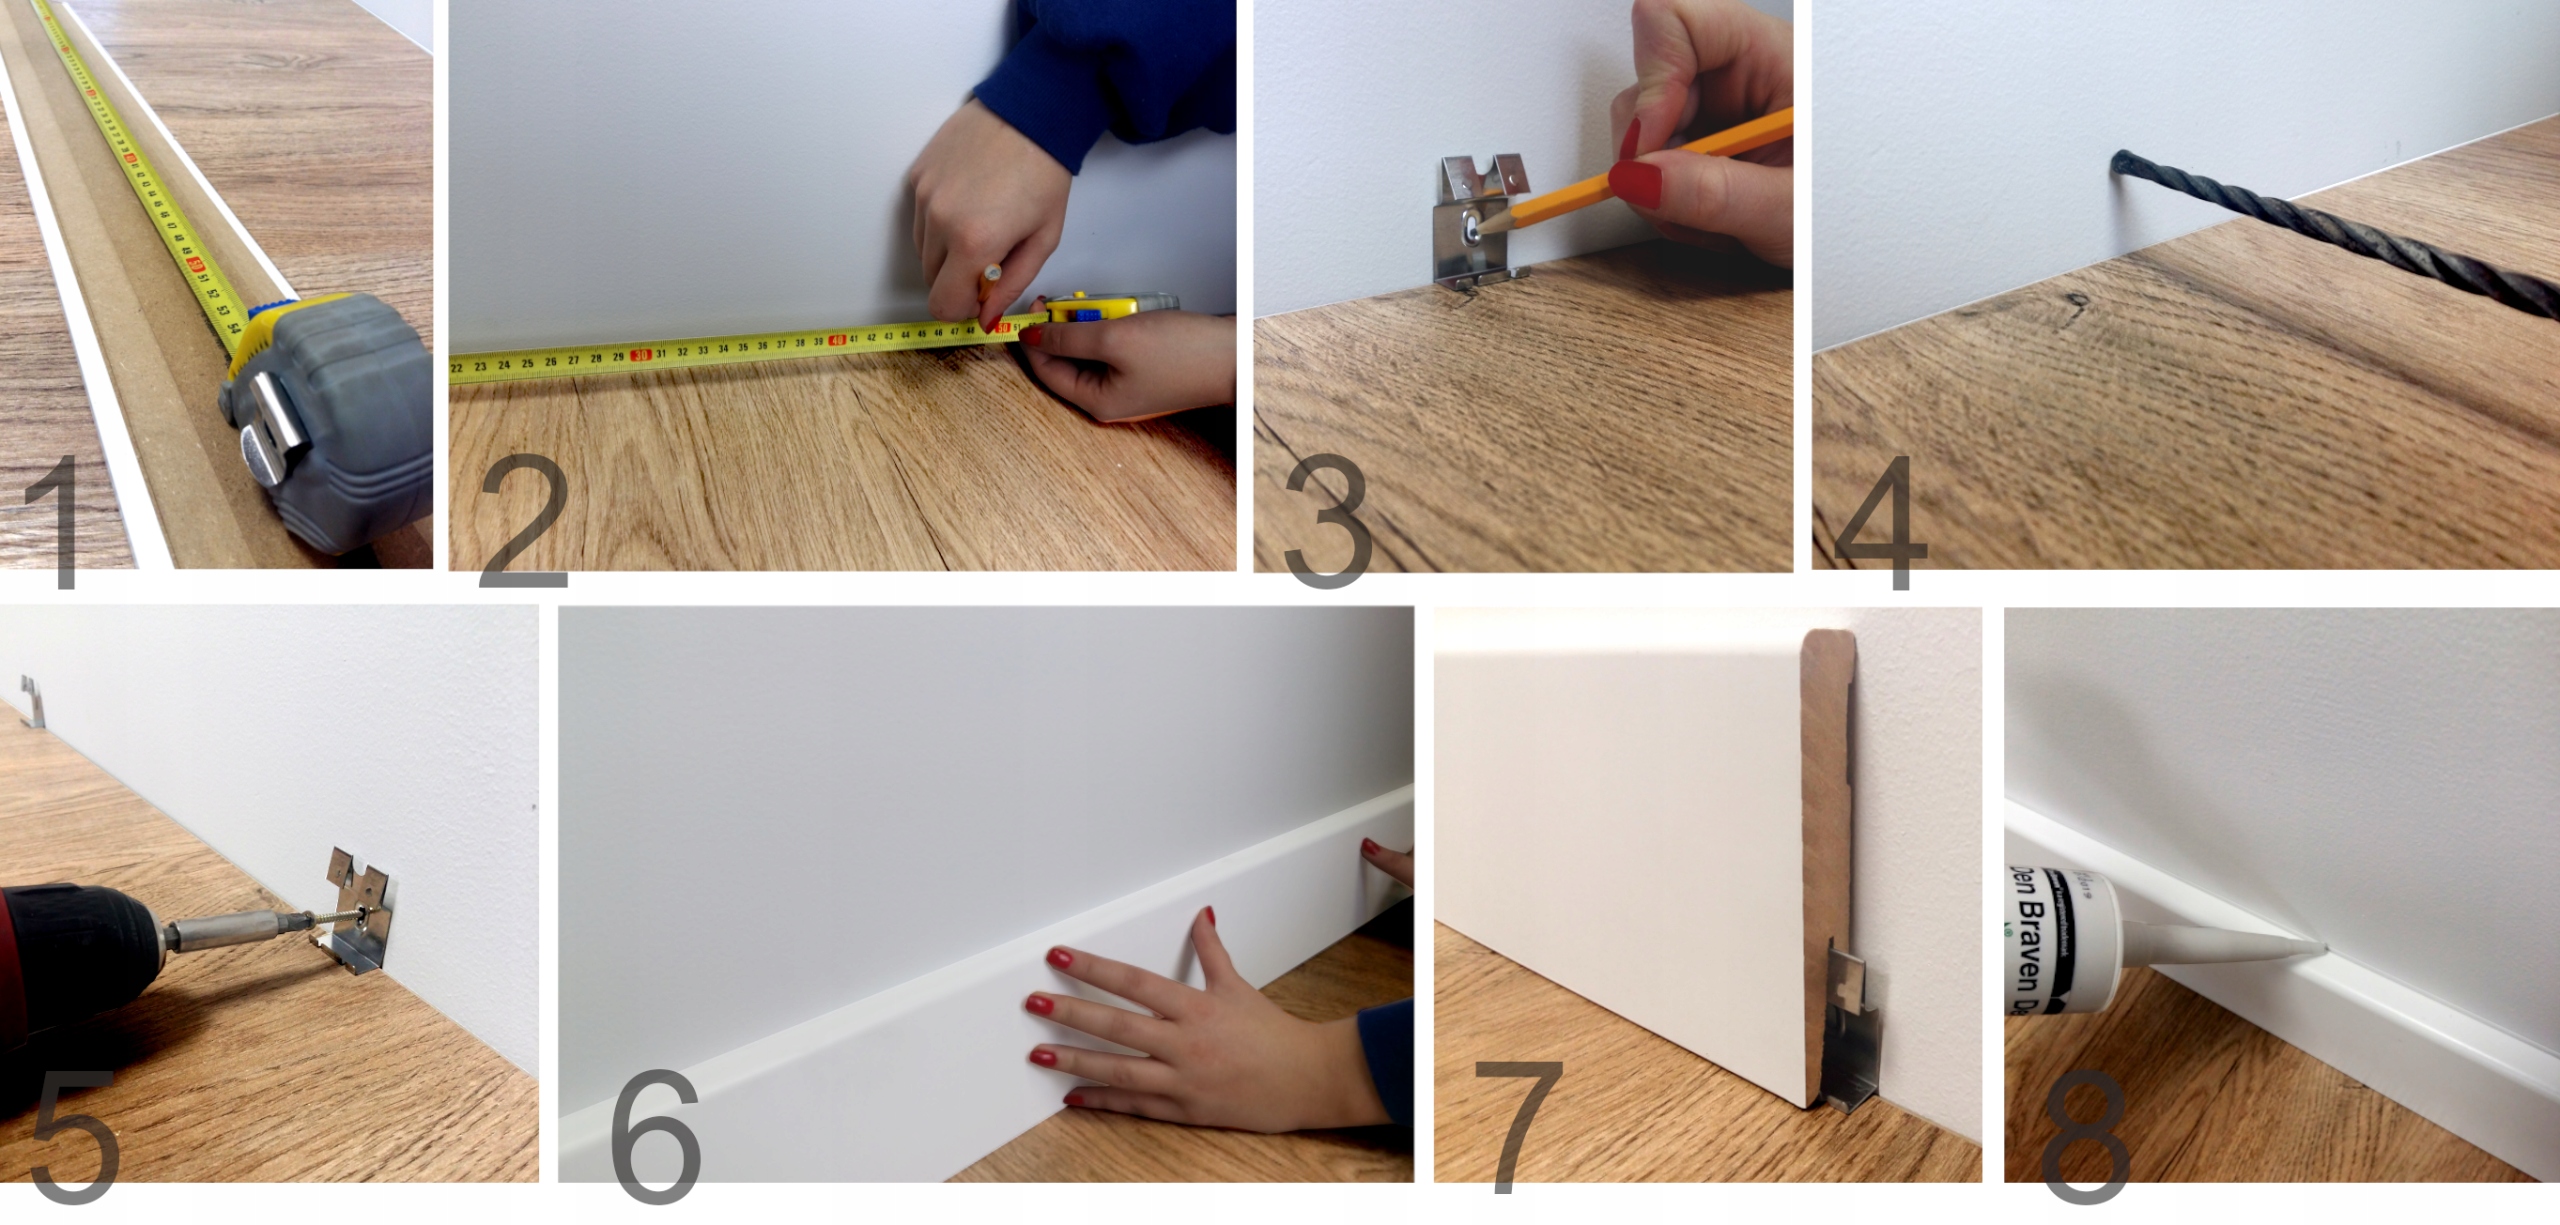 Как установить плинтус на пол своими руками в доме: инструкция- обзор + видео